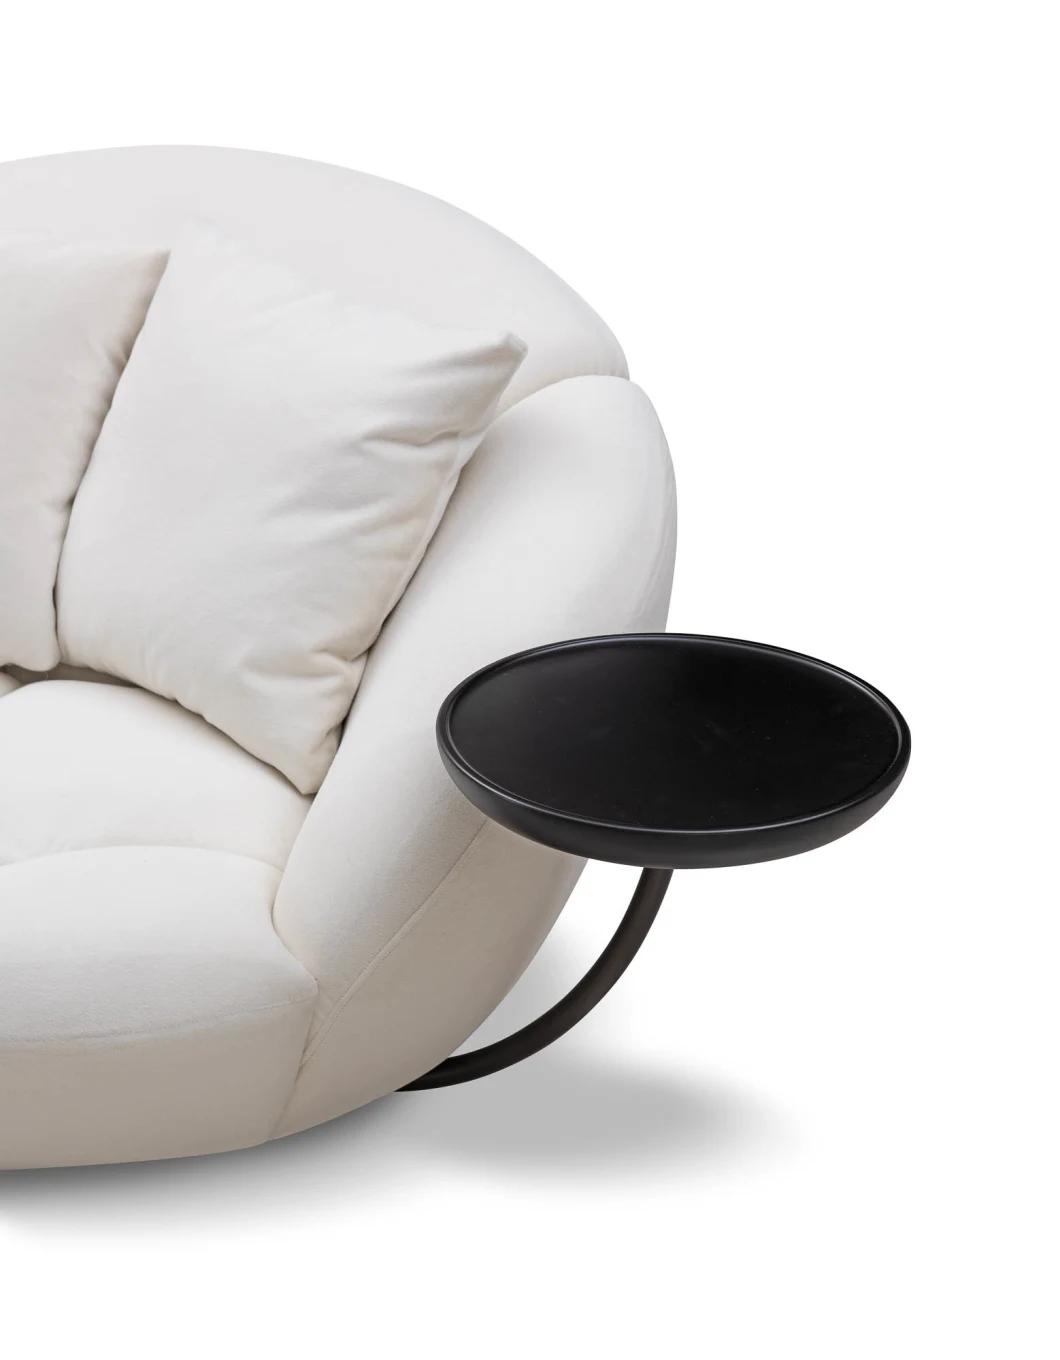 Modern Living Room Furniture Armchair Circle Cushion Lounge Chair